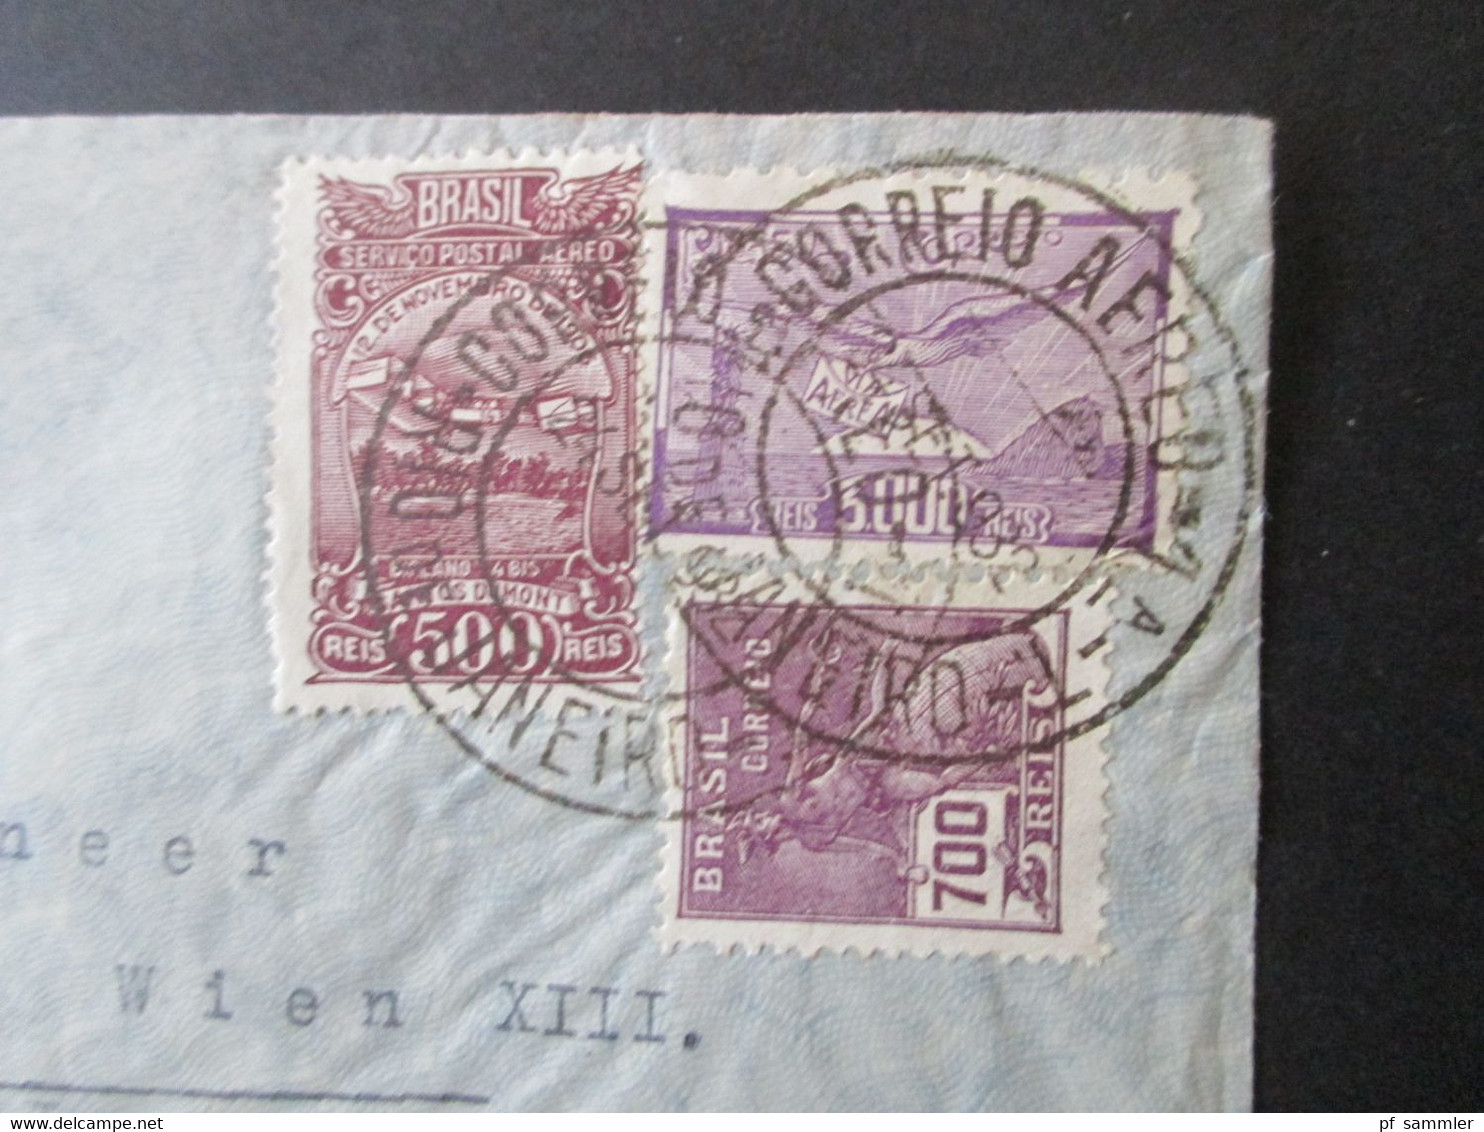 Brasilien 1932 Luftpostbeleg Violetter Stempel Via Aeropostale Mit Flugpostmarke Nr. 337 Nach Wien Gesendet - Brieven En Documenten